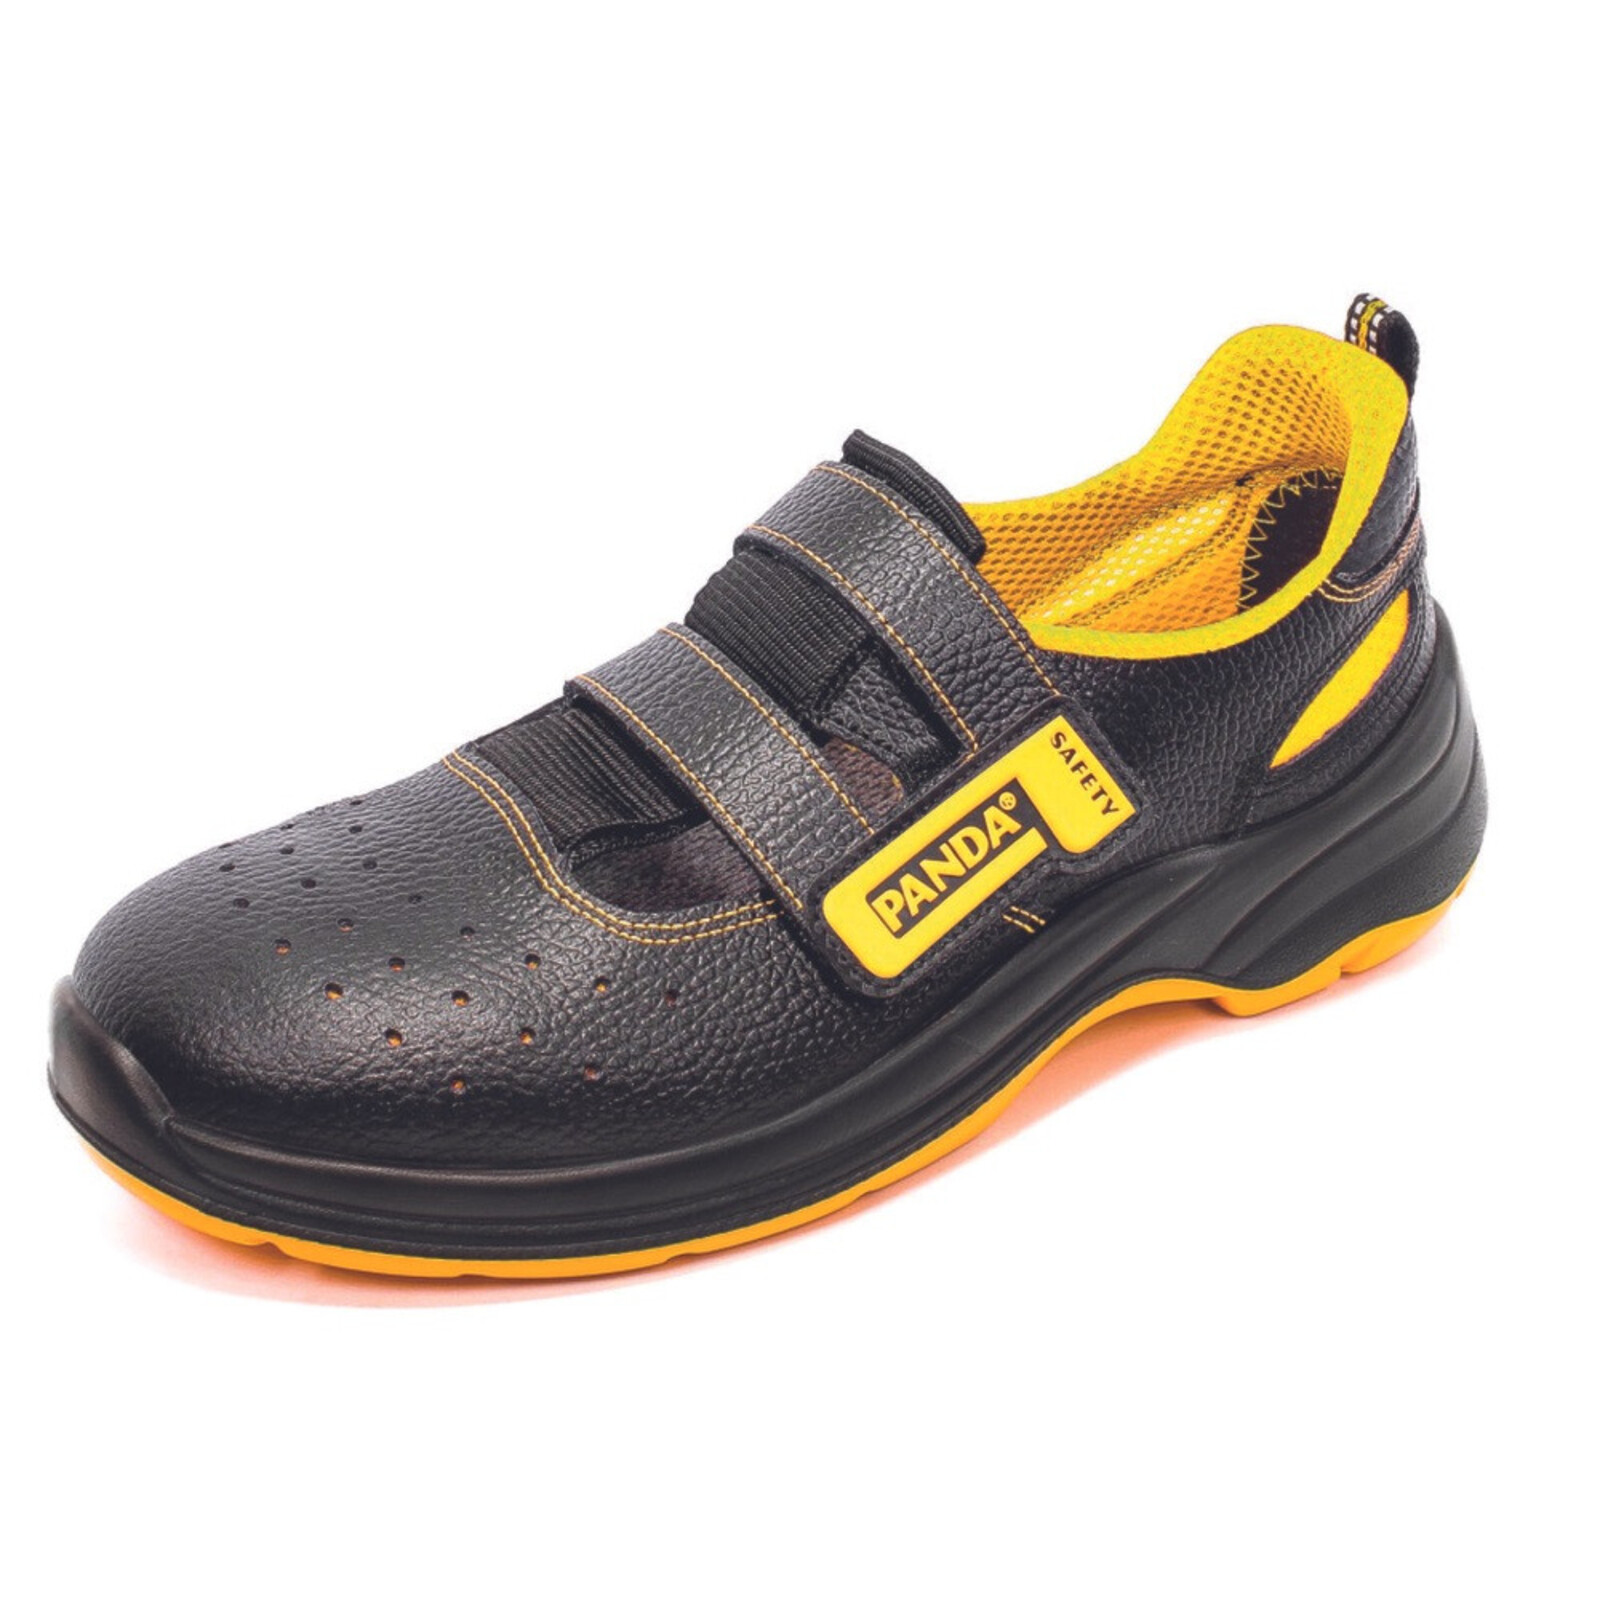 Bezpečnostné sandále Panda Basic Venezia MF S1P SRC - veľkosť: 43, farba: čierna/žltá